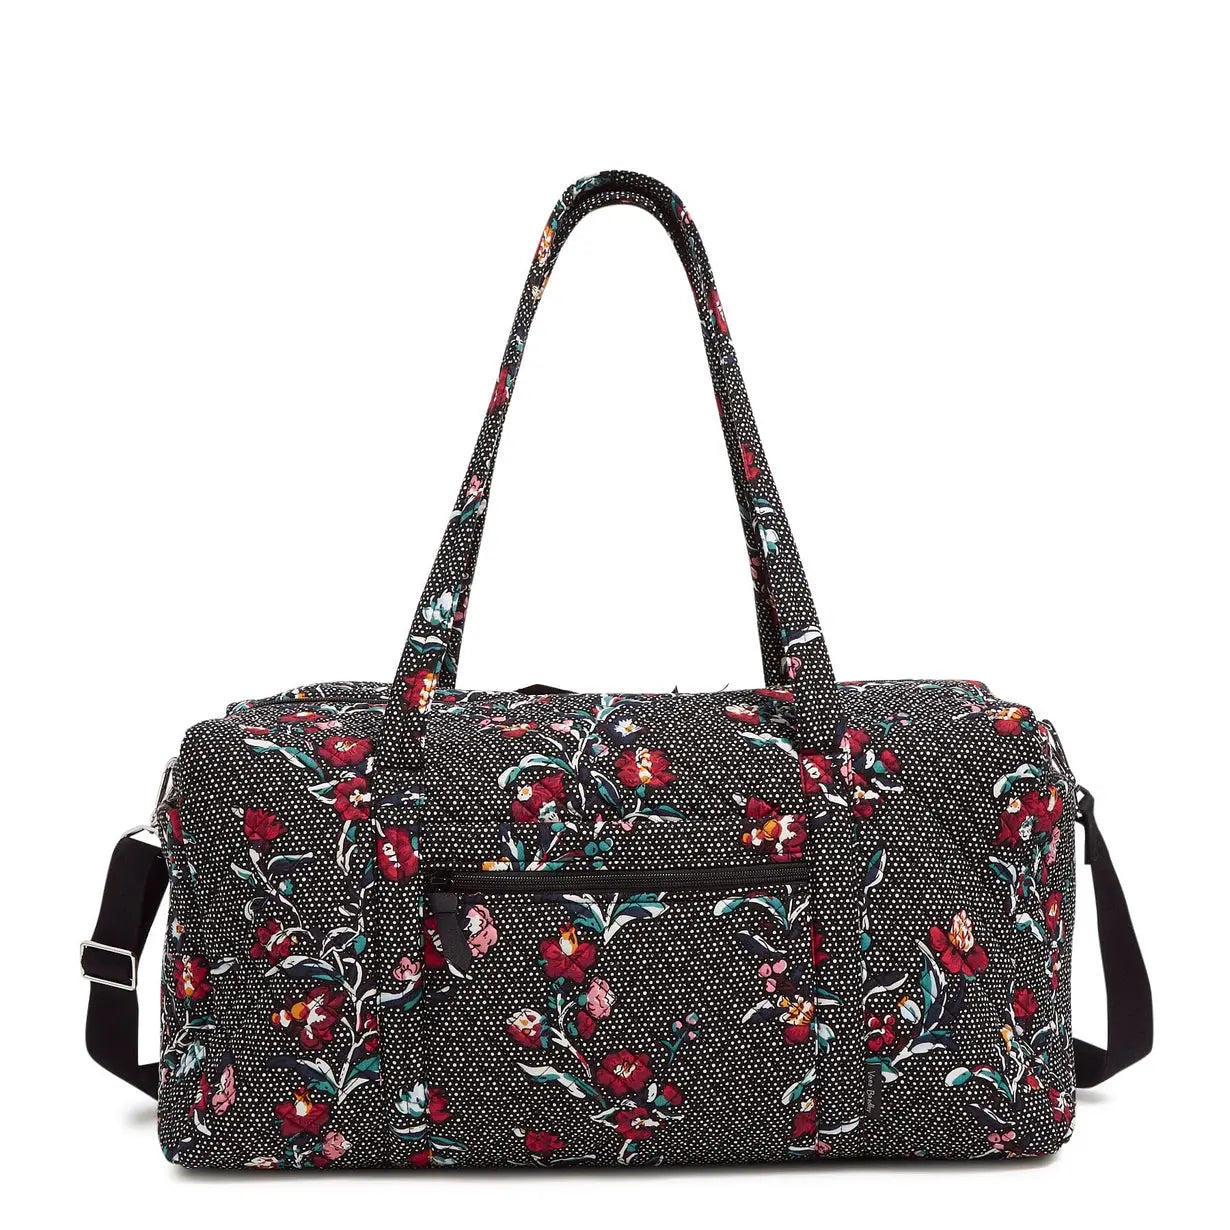 Vera Bradley Large Travel Duffel Bag - Perennials Noir Dot